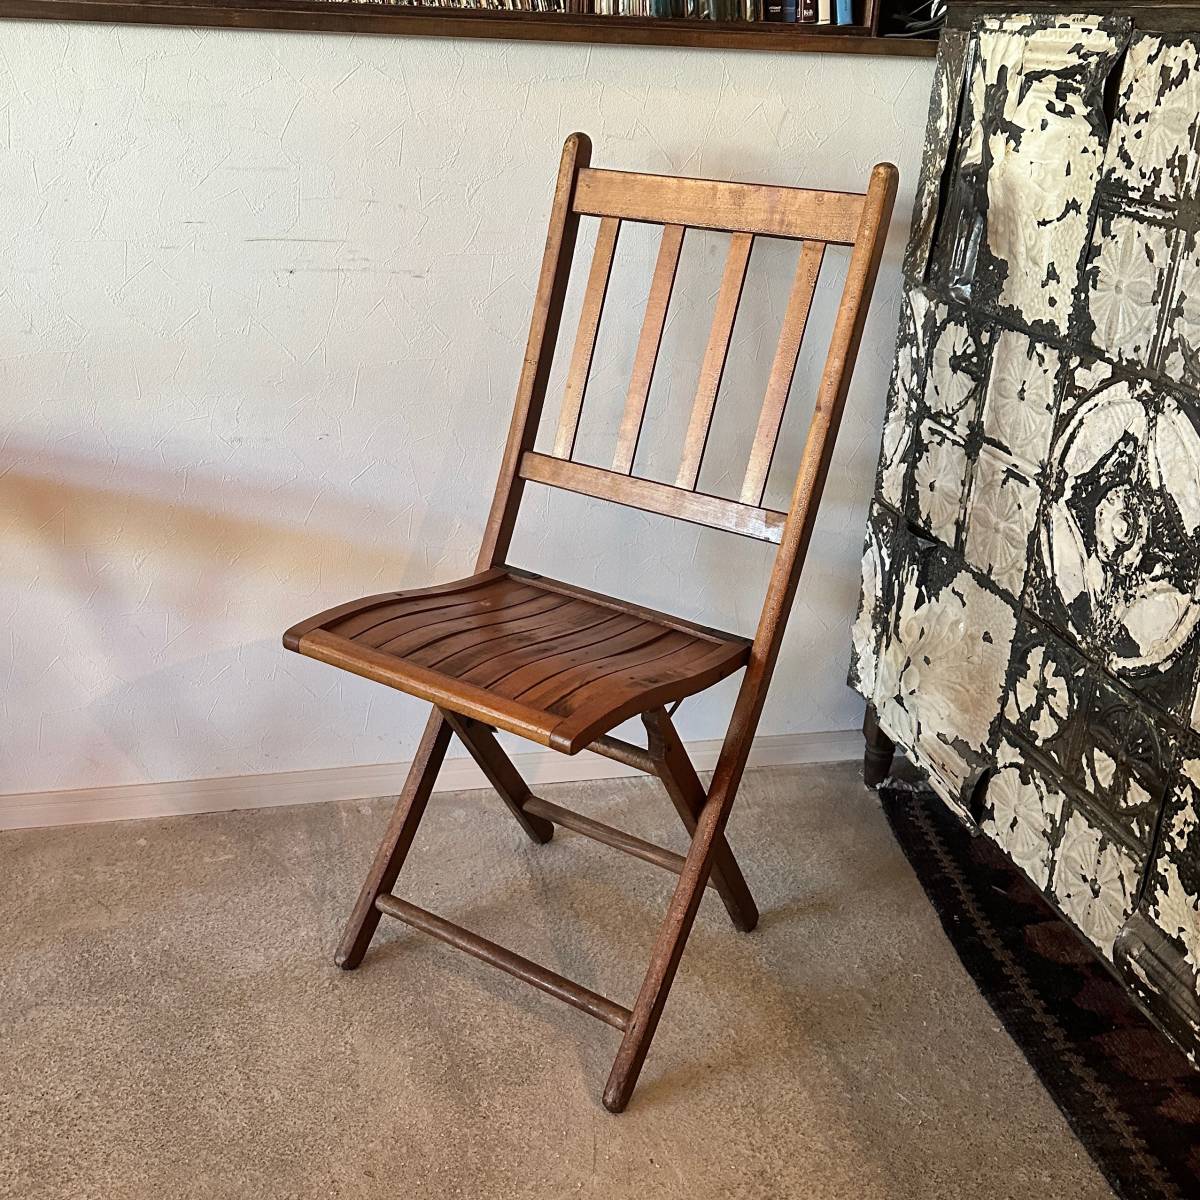 男女兼用 【Vintage】~1940s Folding Chair フォールディングチェア 折り畳み椅子 イス 家具 キャンプ アウトドア ヴィンテージ アンティーク A 西洋